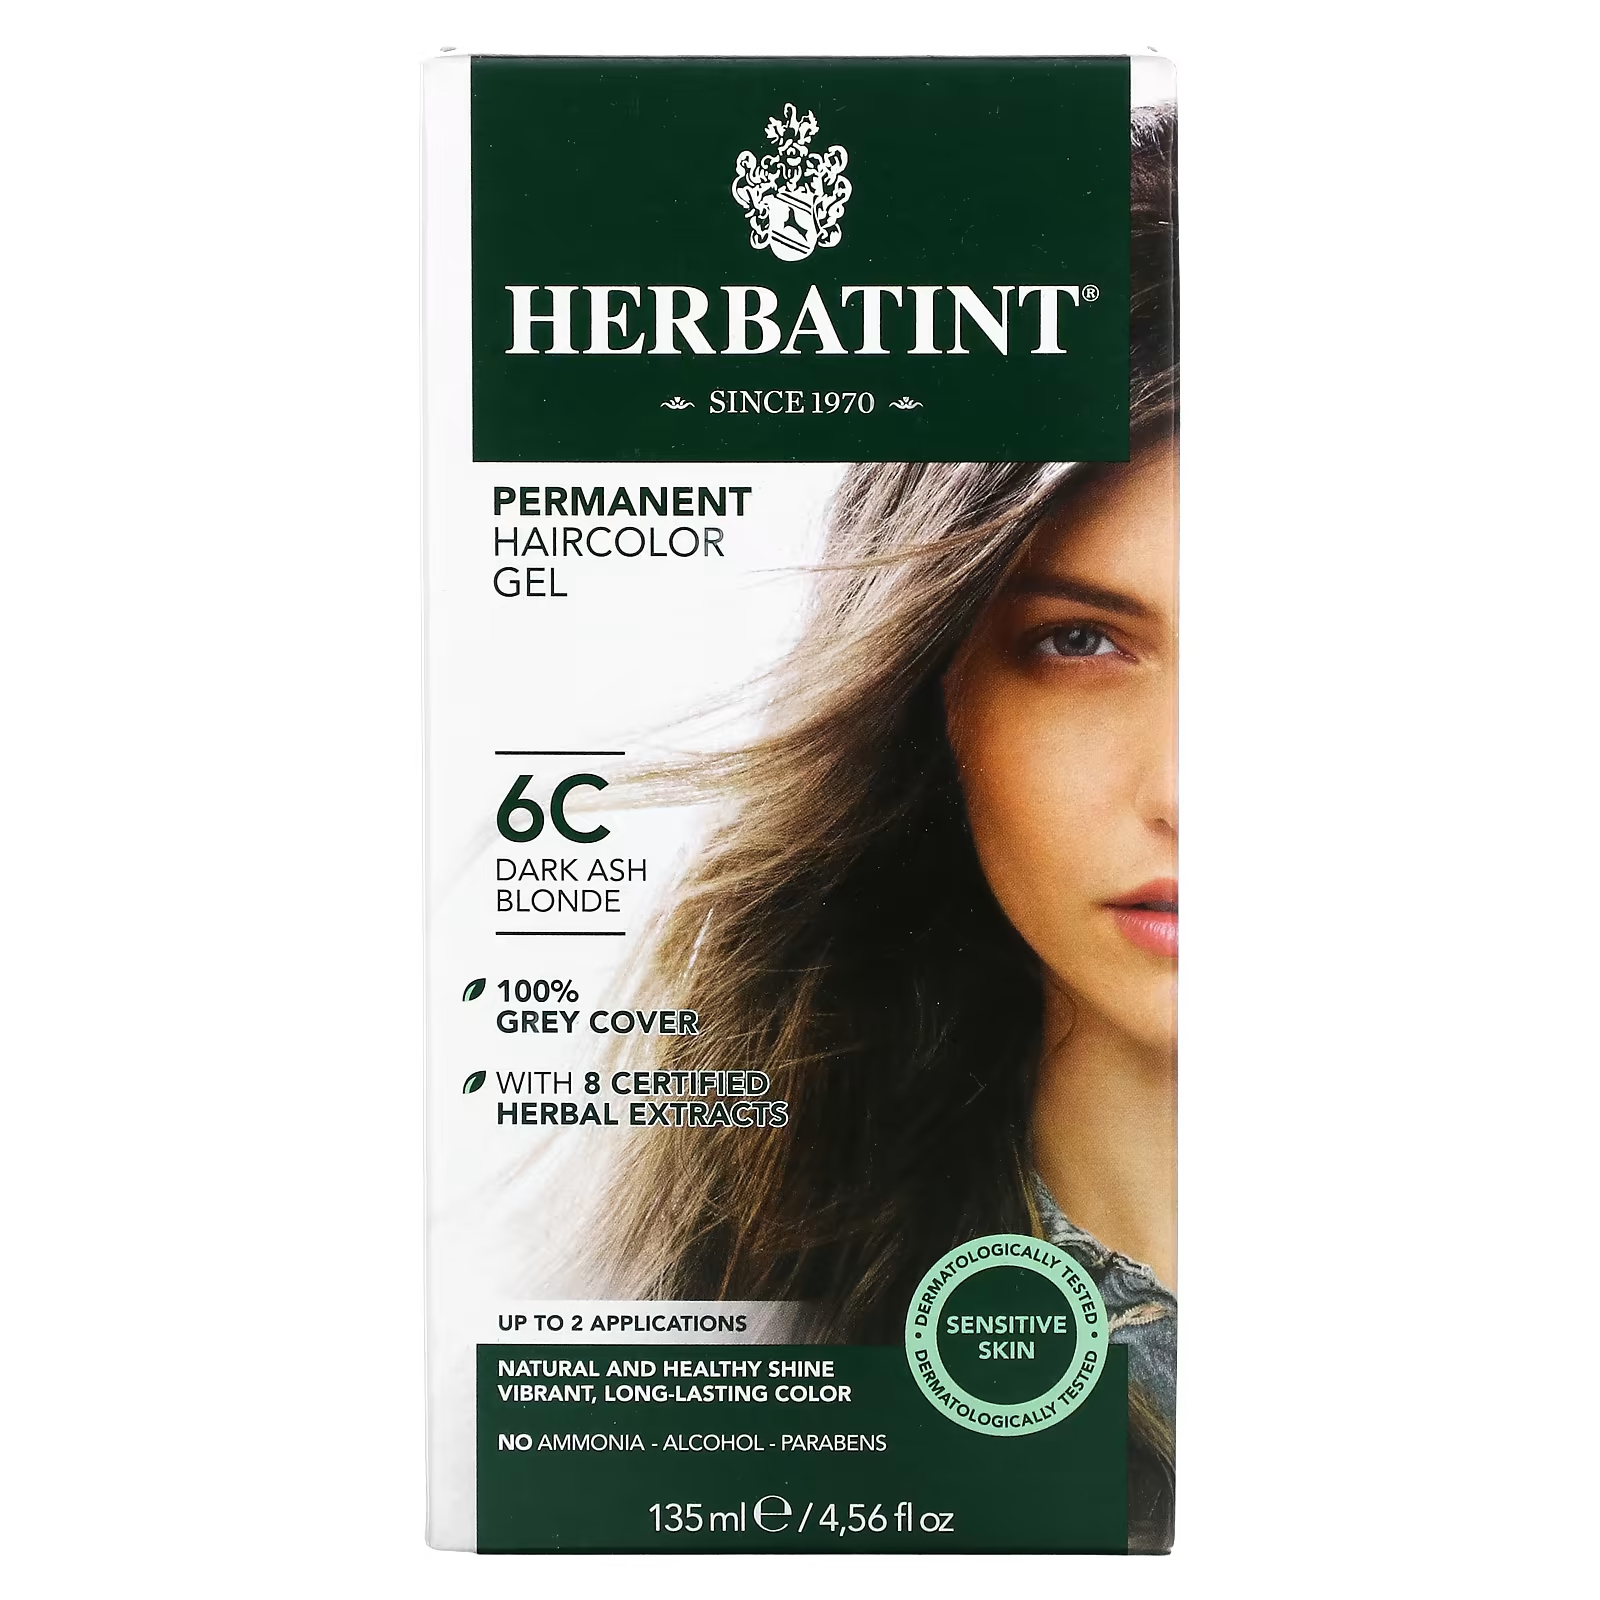 Перманентная гель-краска для волос Herbatint 6C темно-пепельный блондин, 135 мл herbatint перманентная гель краска для волос 6d темный золотой блондин 135 мл